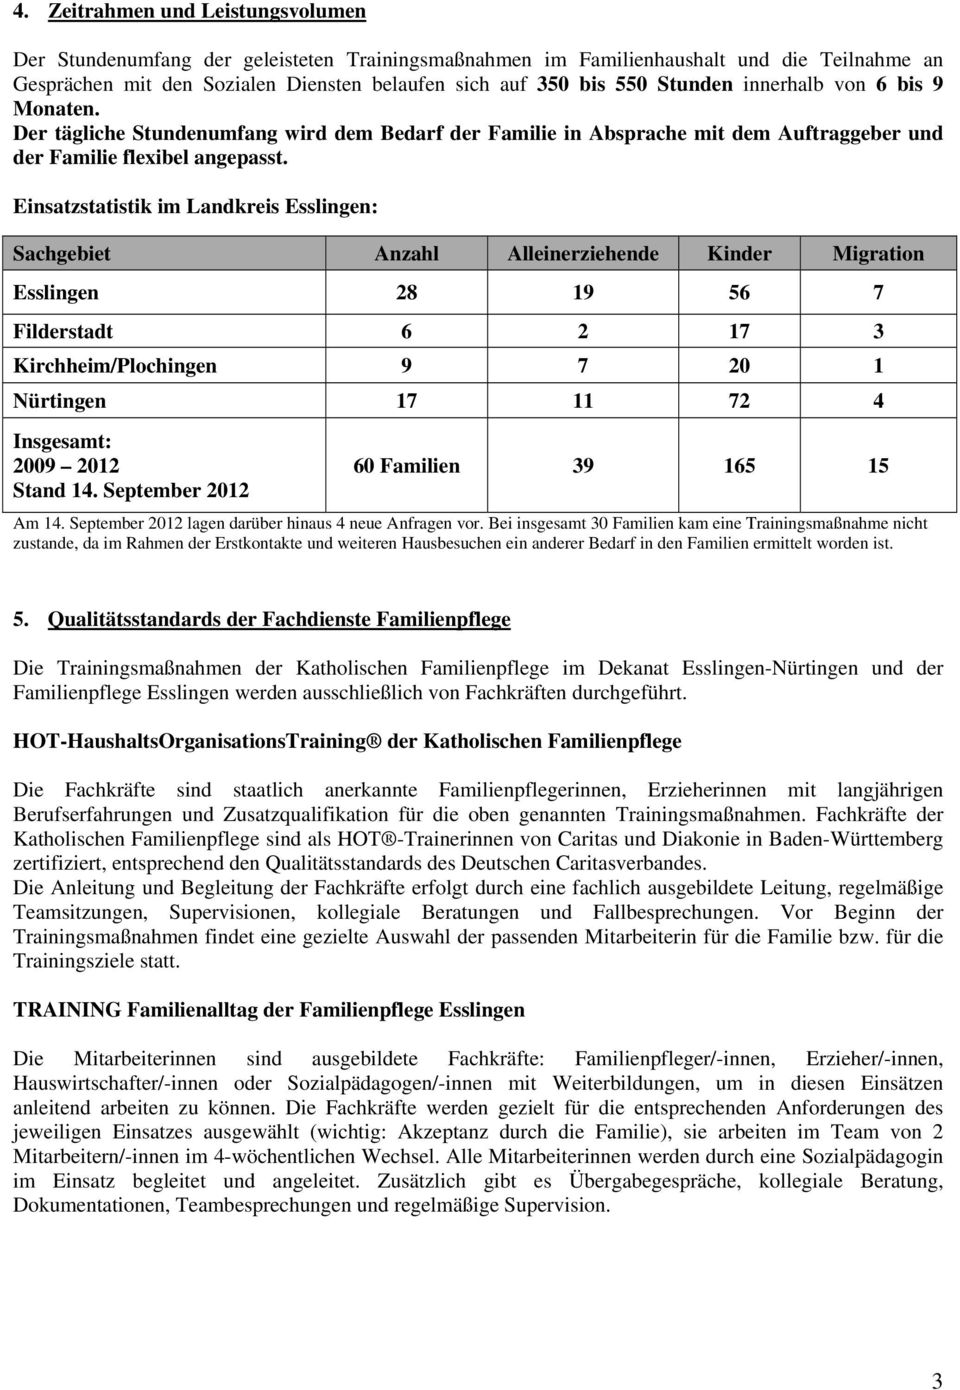 Einsatzstatistik im Landkreis Esslingen: Sachgebiet Anzahl Alleinerziehende Kinder Migration Esslingen 28 19 56 7 Filderstadt 6 2 17 3 Kirchheim/Plochingen 9 7 20 1 Nürtingen 17 11 72 4 Insgesamt: